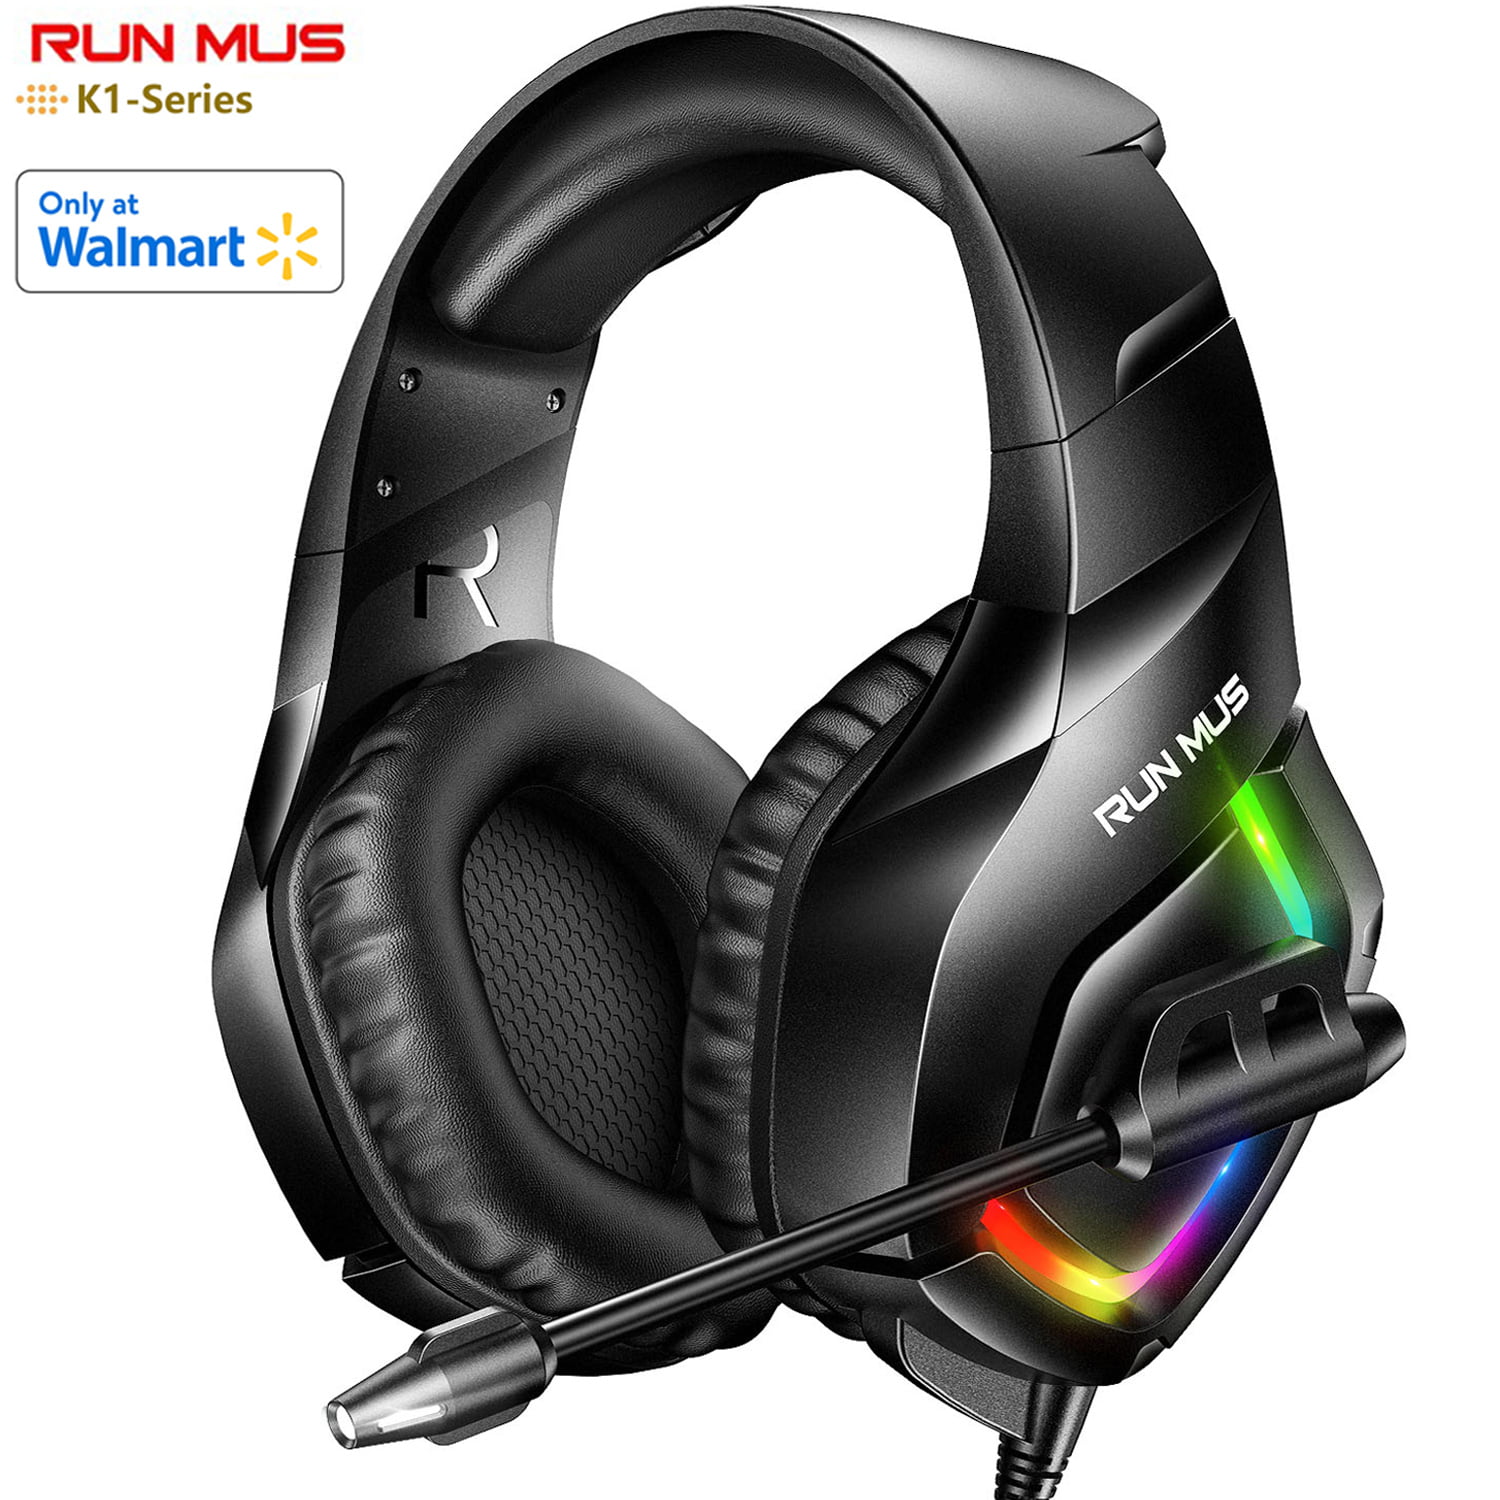 WodnHoak RUNMUS Gaming Headset with 7.1 Surround Sound